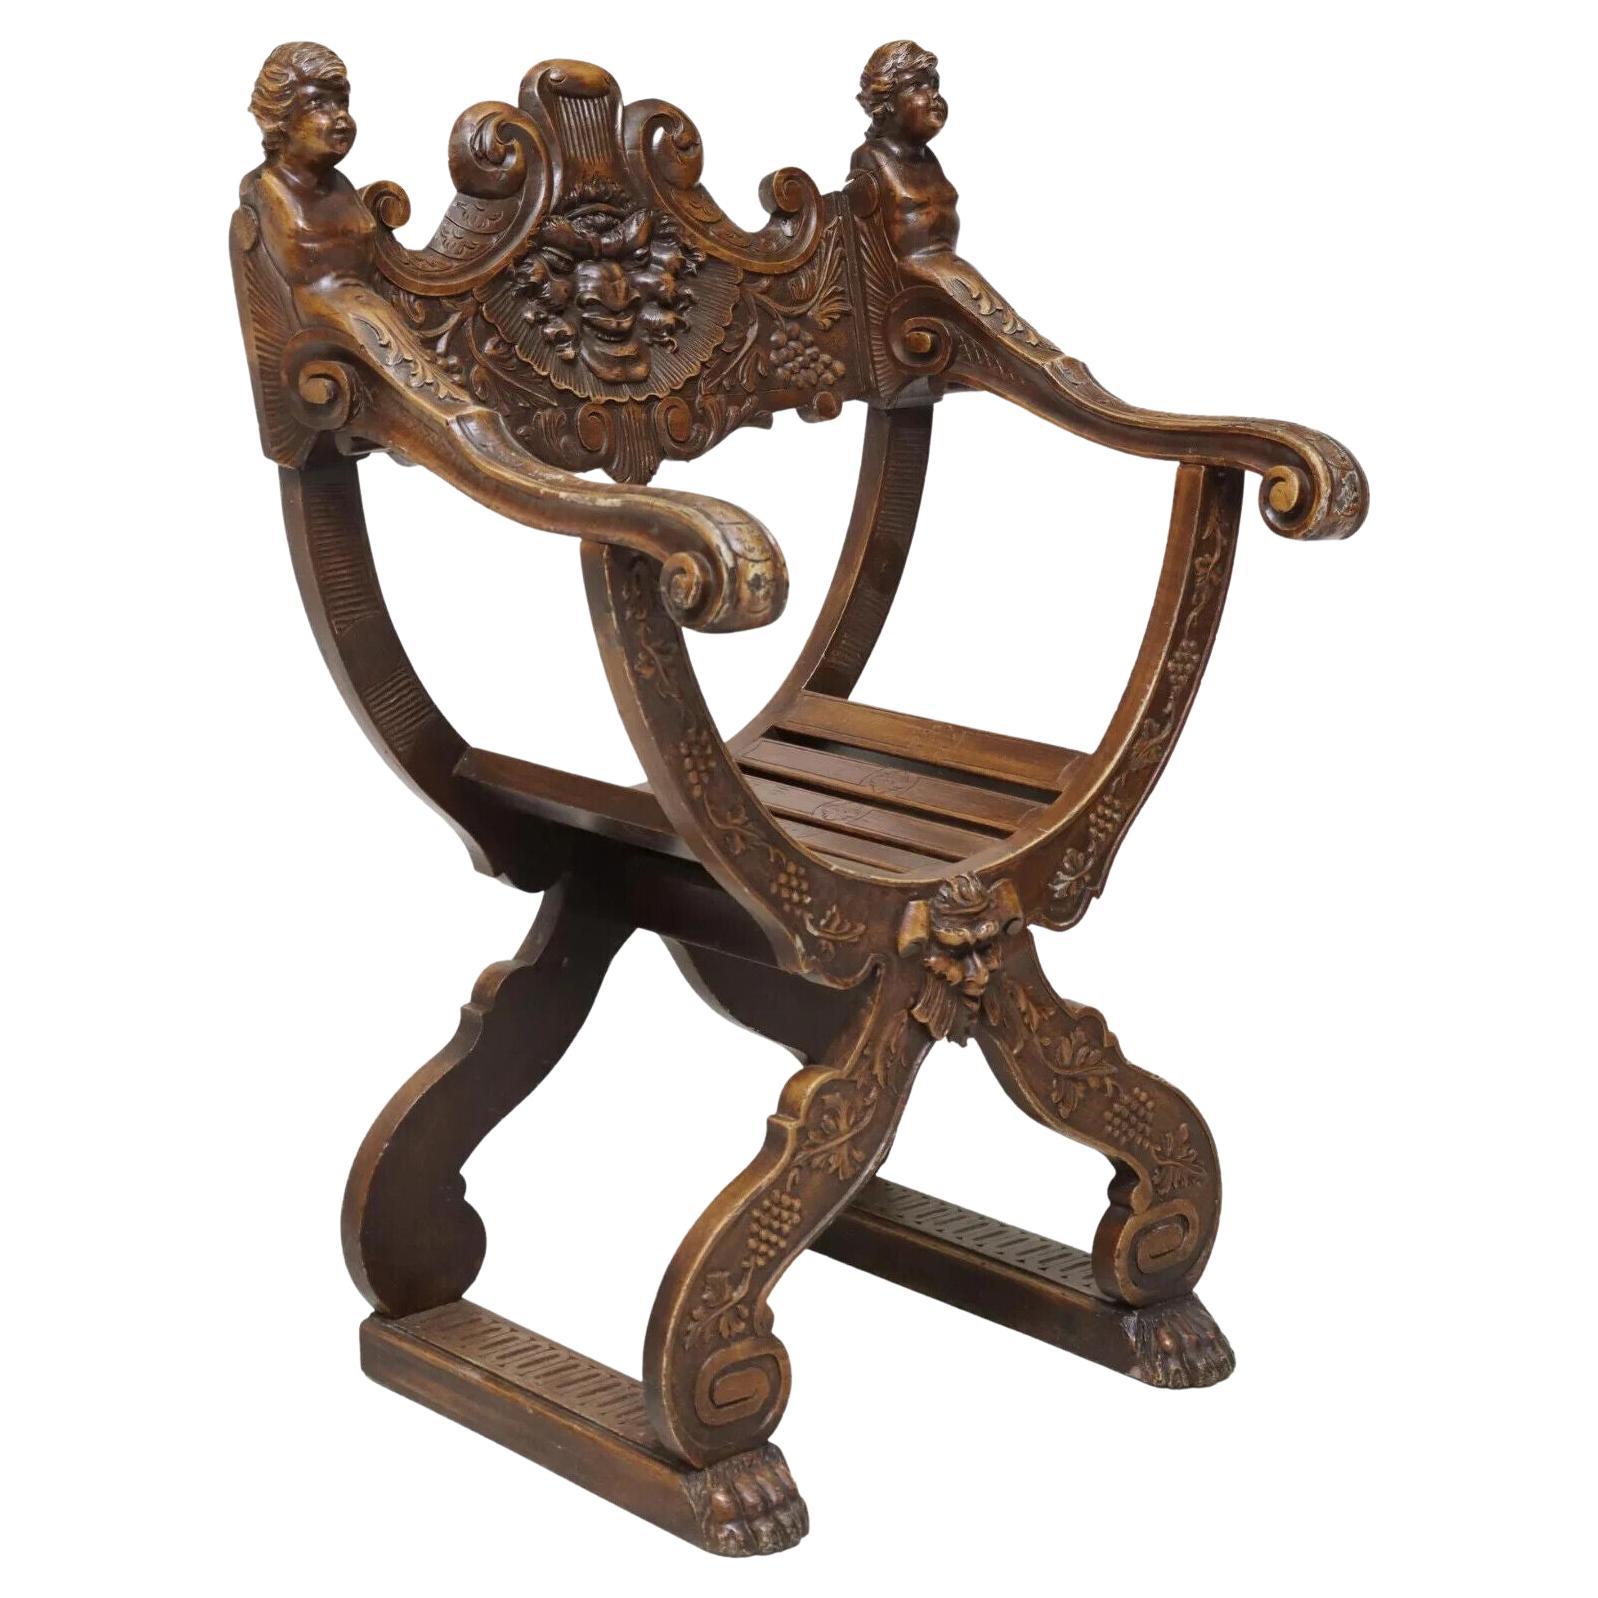 Fauteuil ancien curule des années 1800, néo-Renaissance, sculpté, incurvé, fauteuil